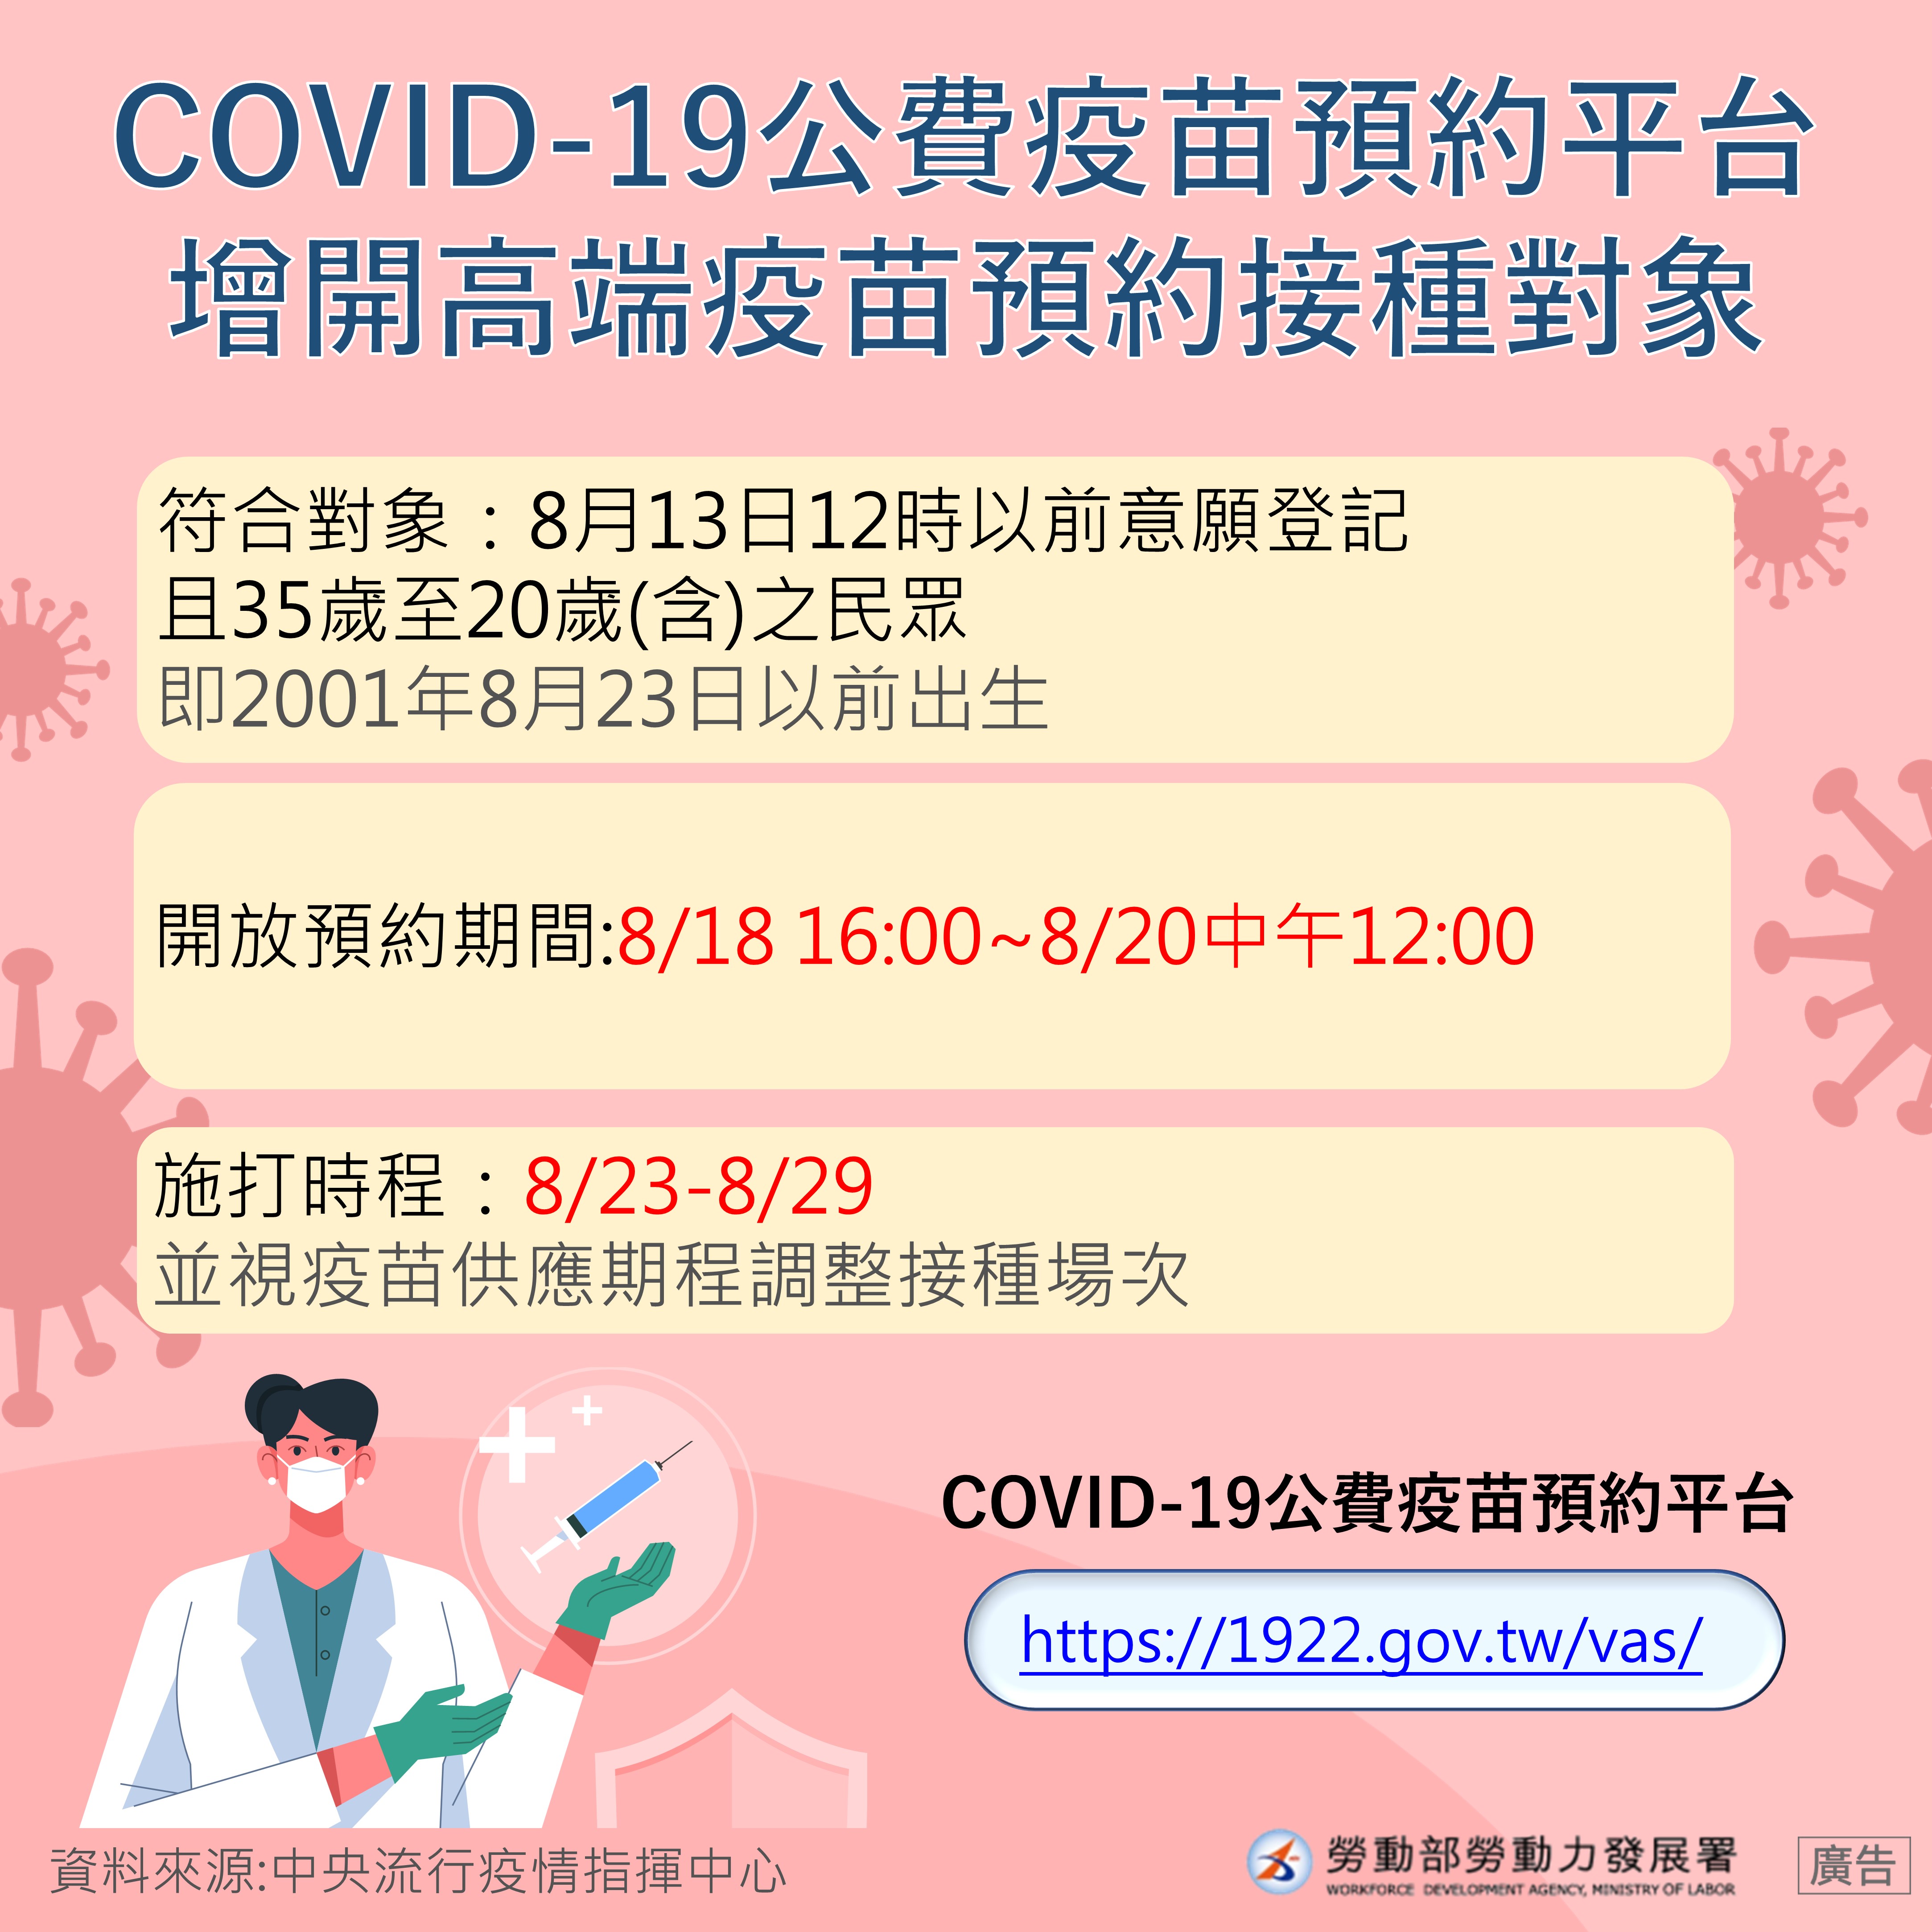 COVID-19公費疫苗預約平台增開高端疫苗預約接種對象-中文